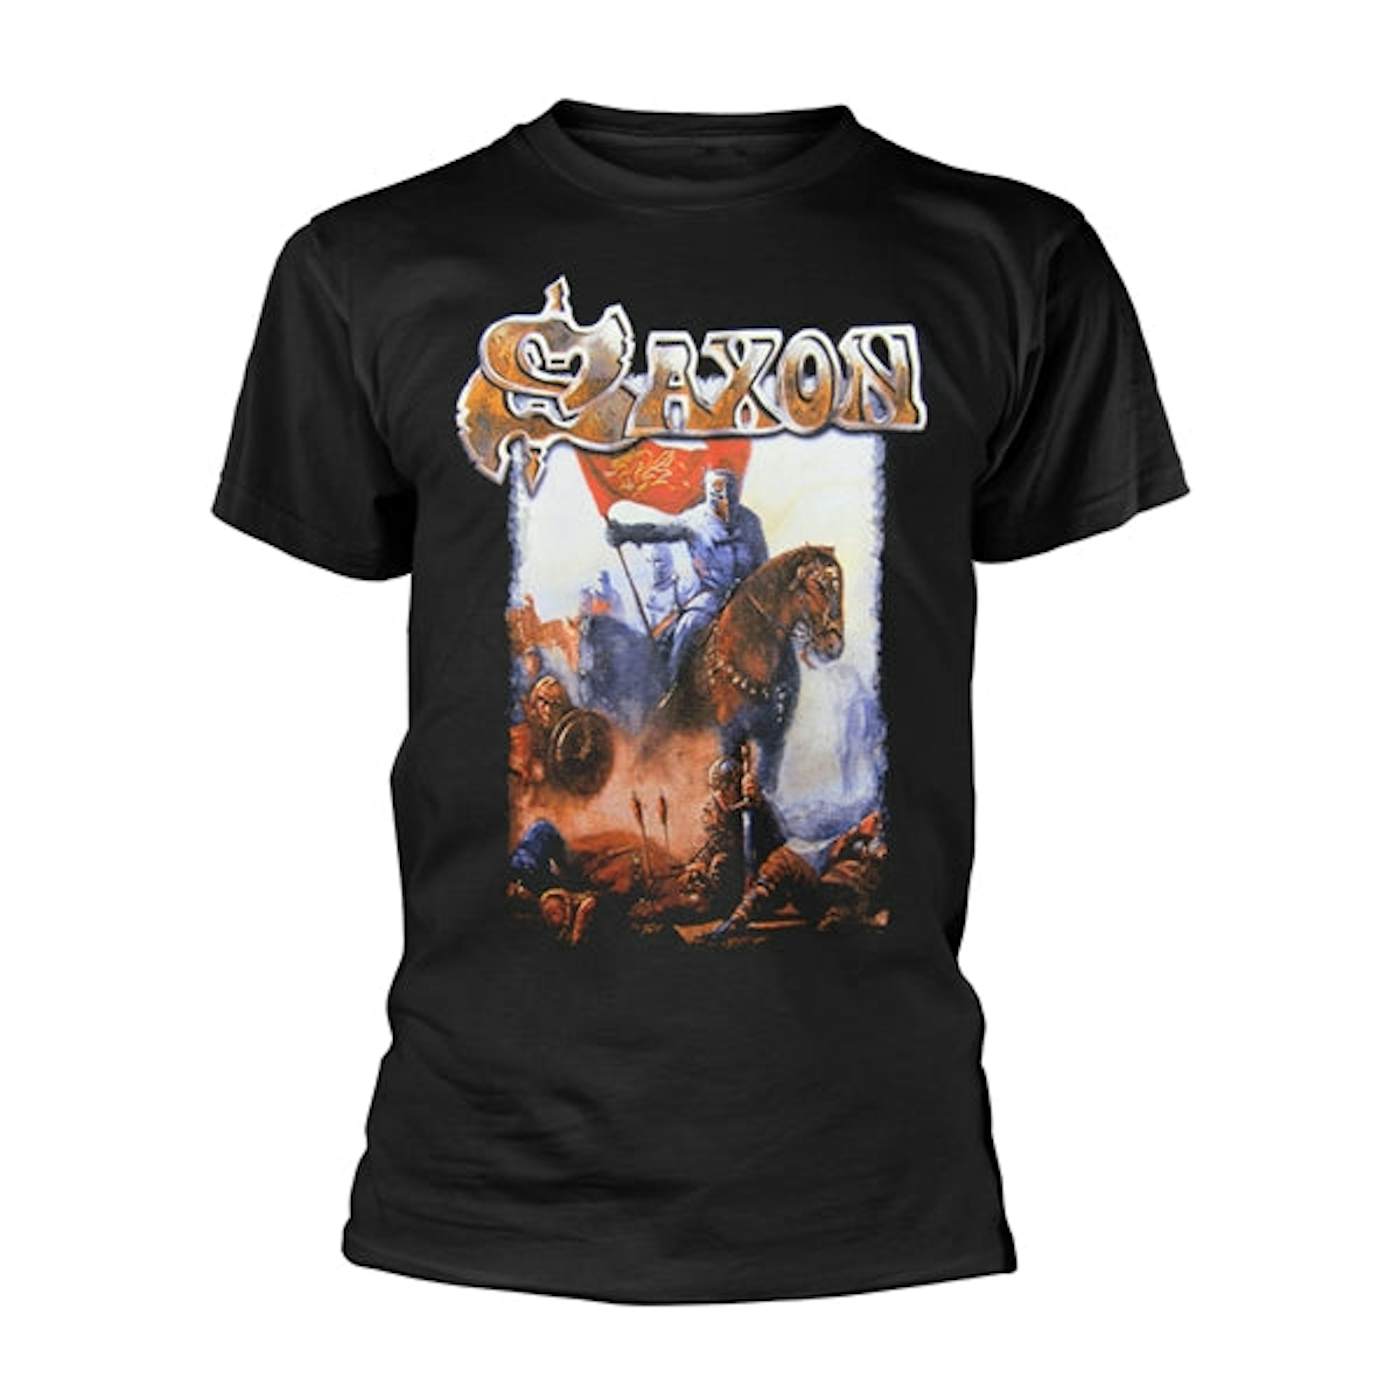 Saxon T Shirt - Crusader